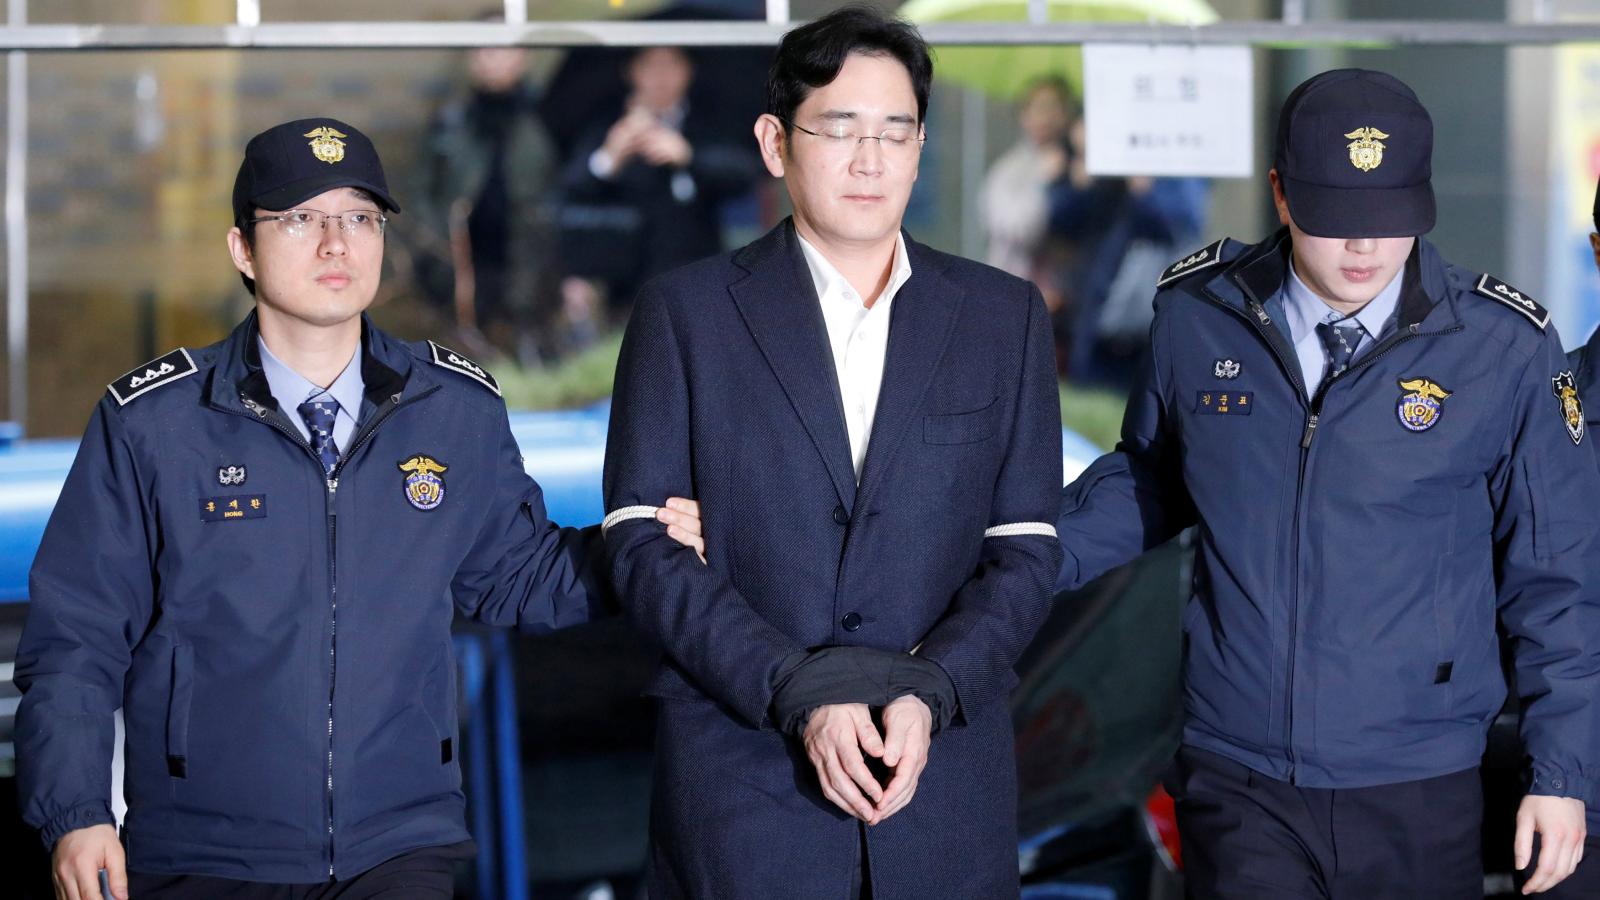 SEFUL Samsung JUDECAT iar pentru Acuzatia de DARE de MITA